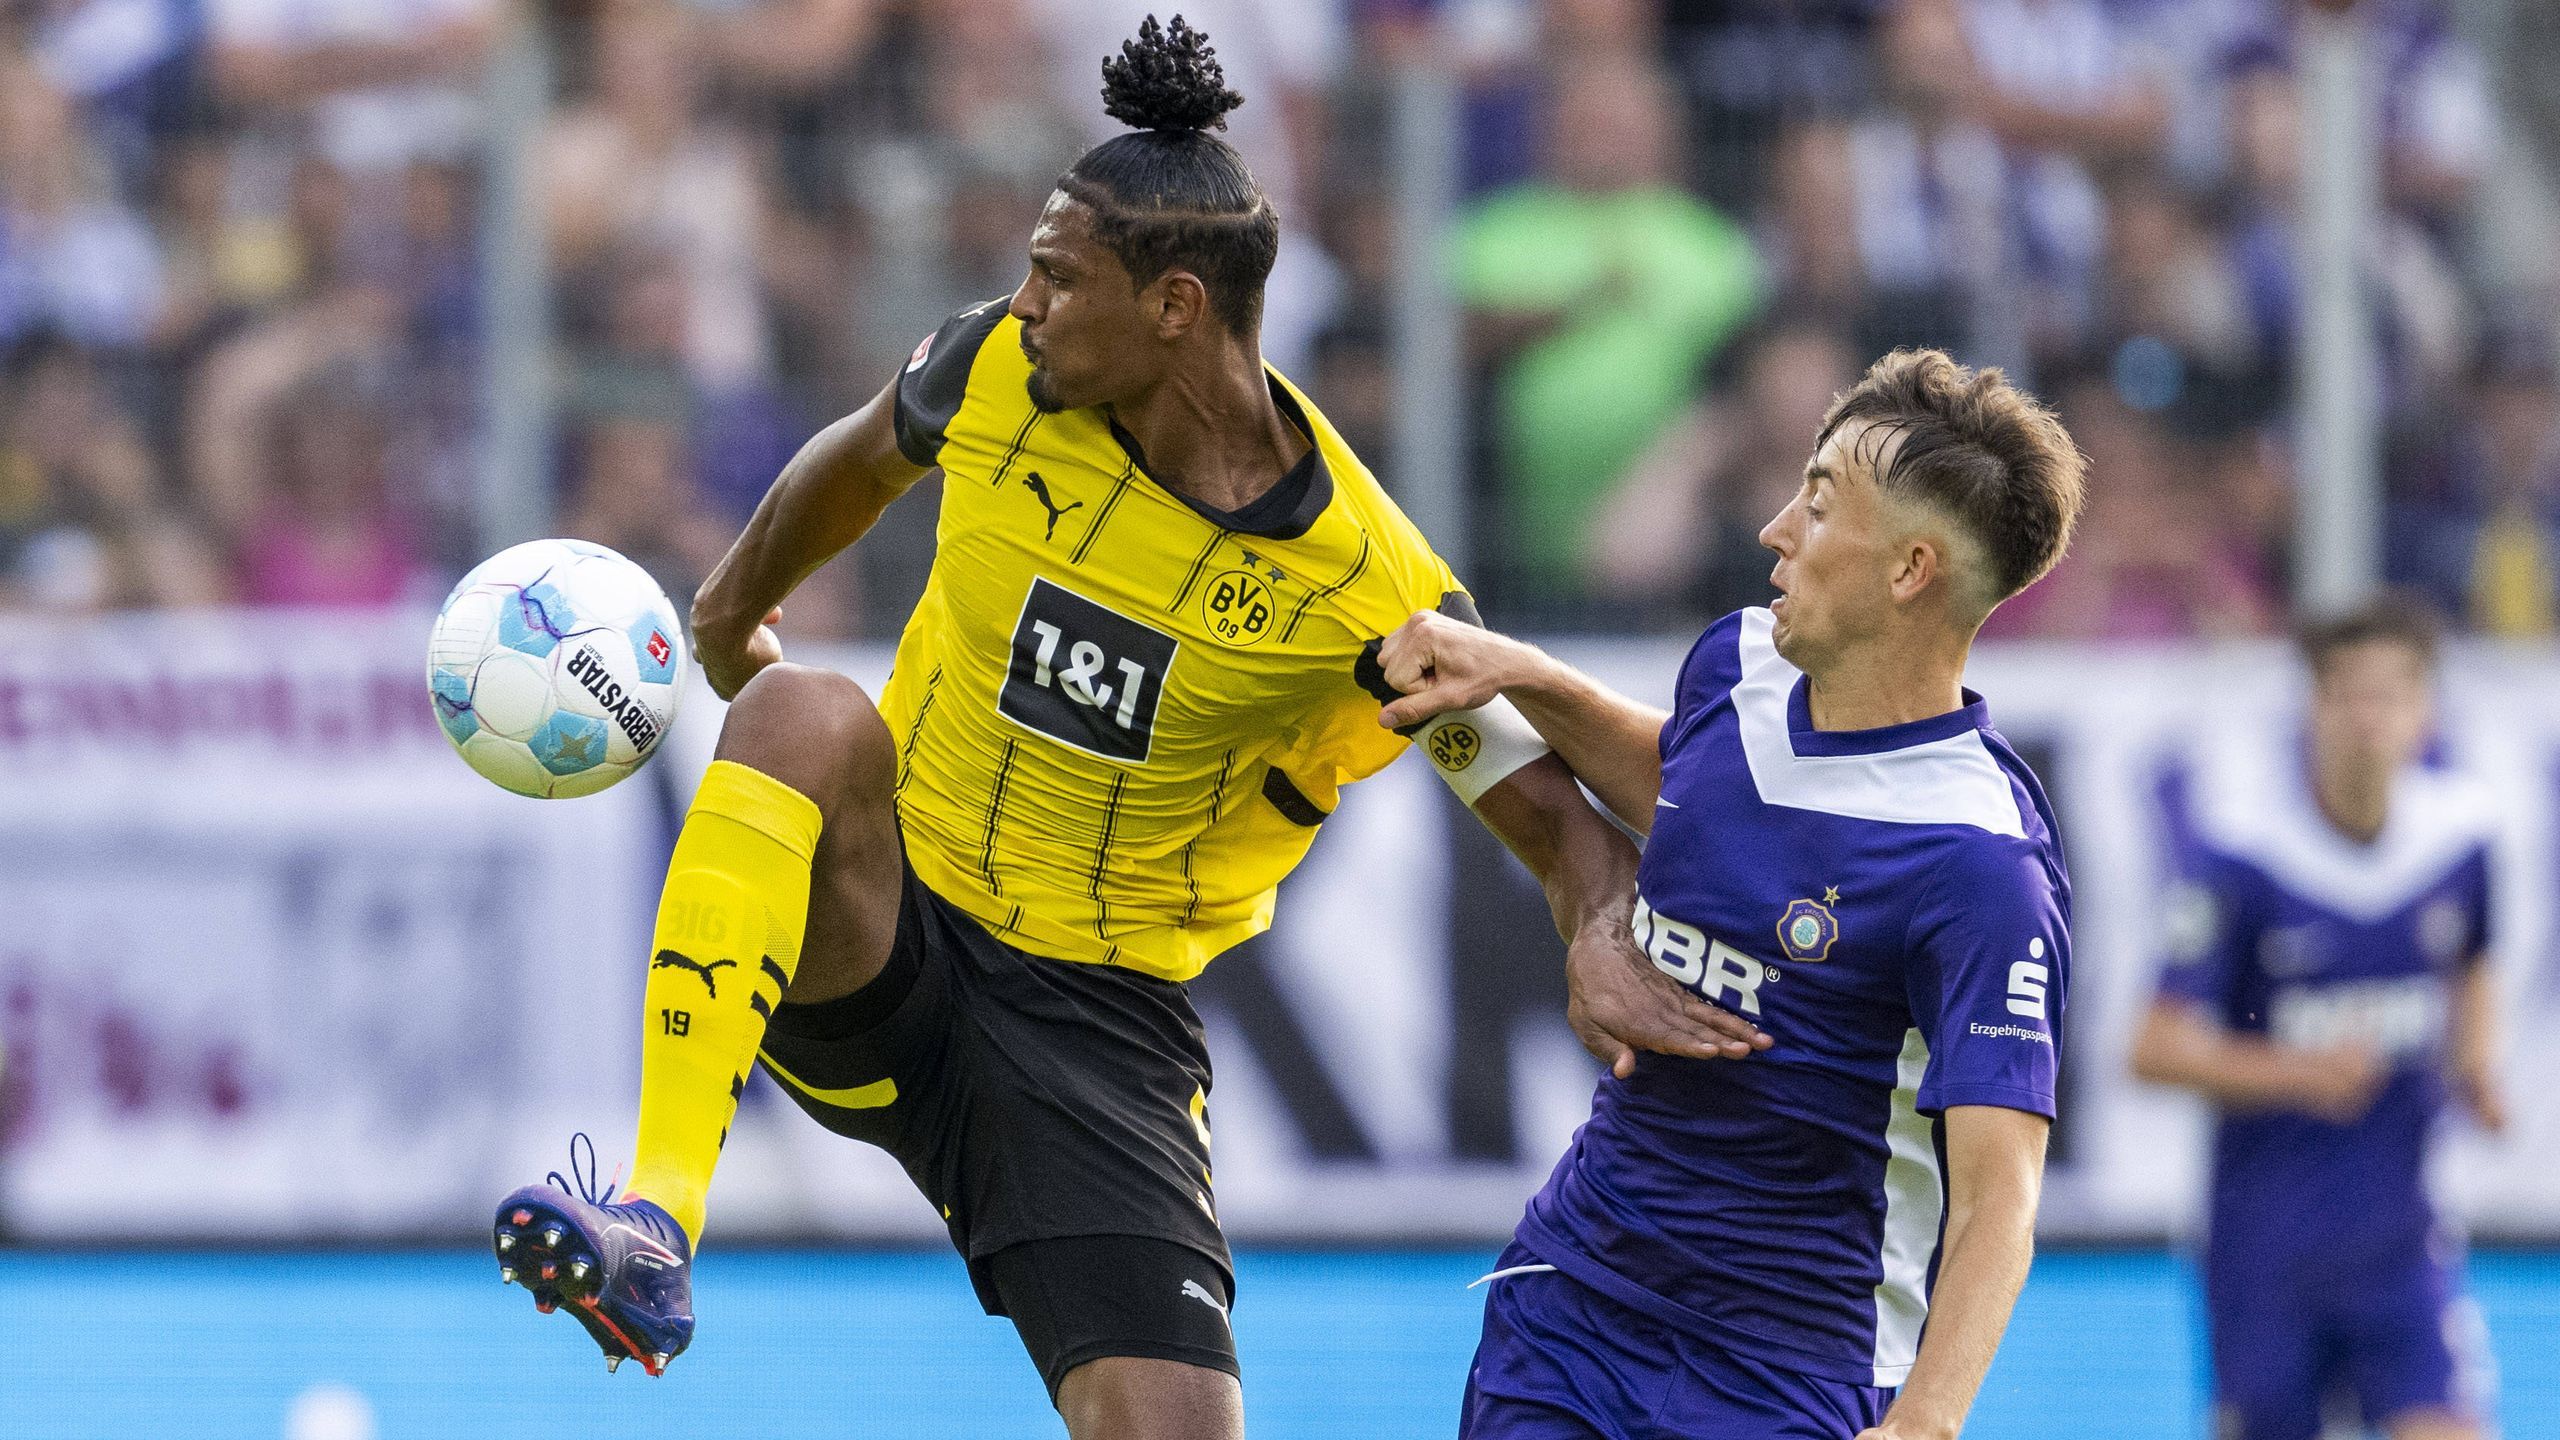 Borussia Dortmund kassiert Dämpfer im Test gegen Erzgebirge Aue - Elias Benkara trifft für den BVB - Eurosport